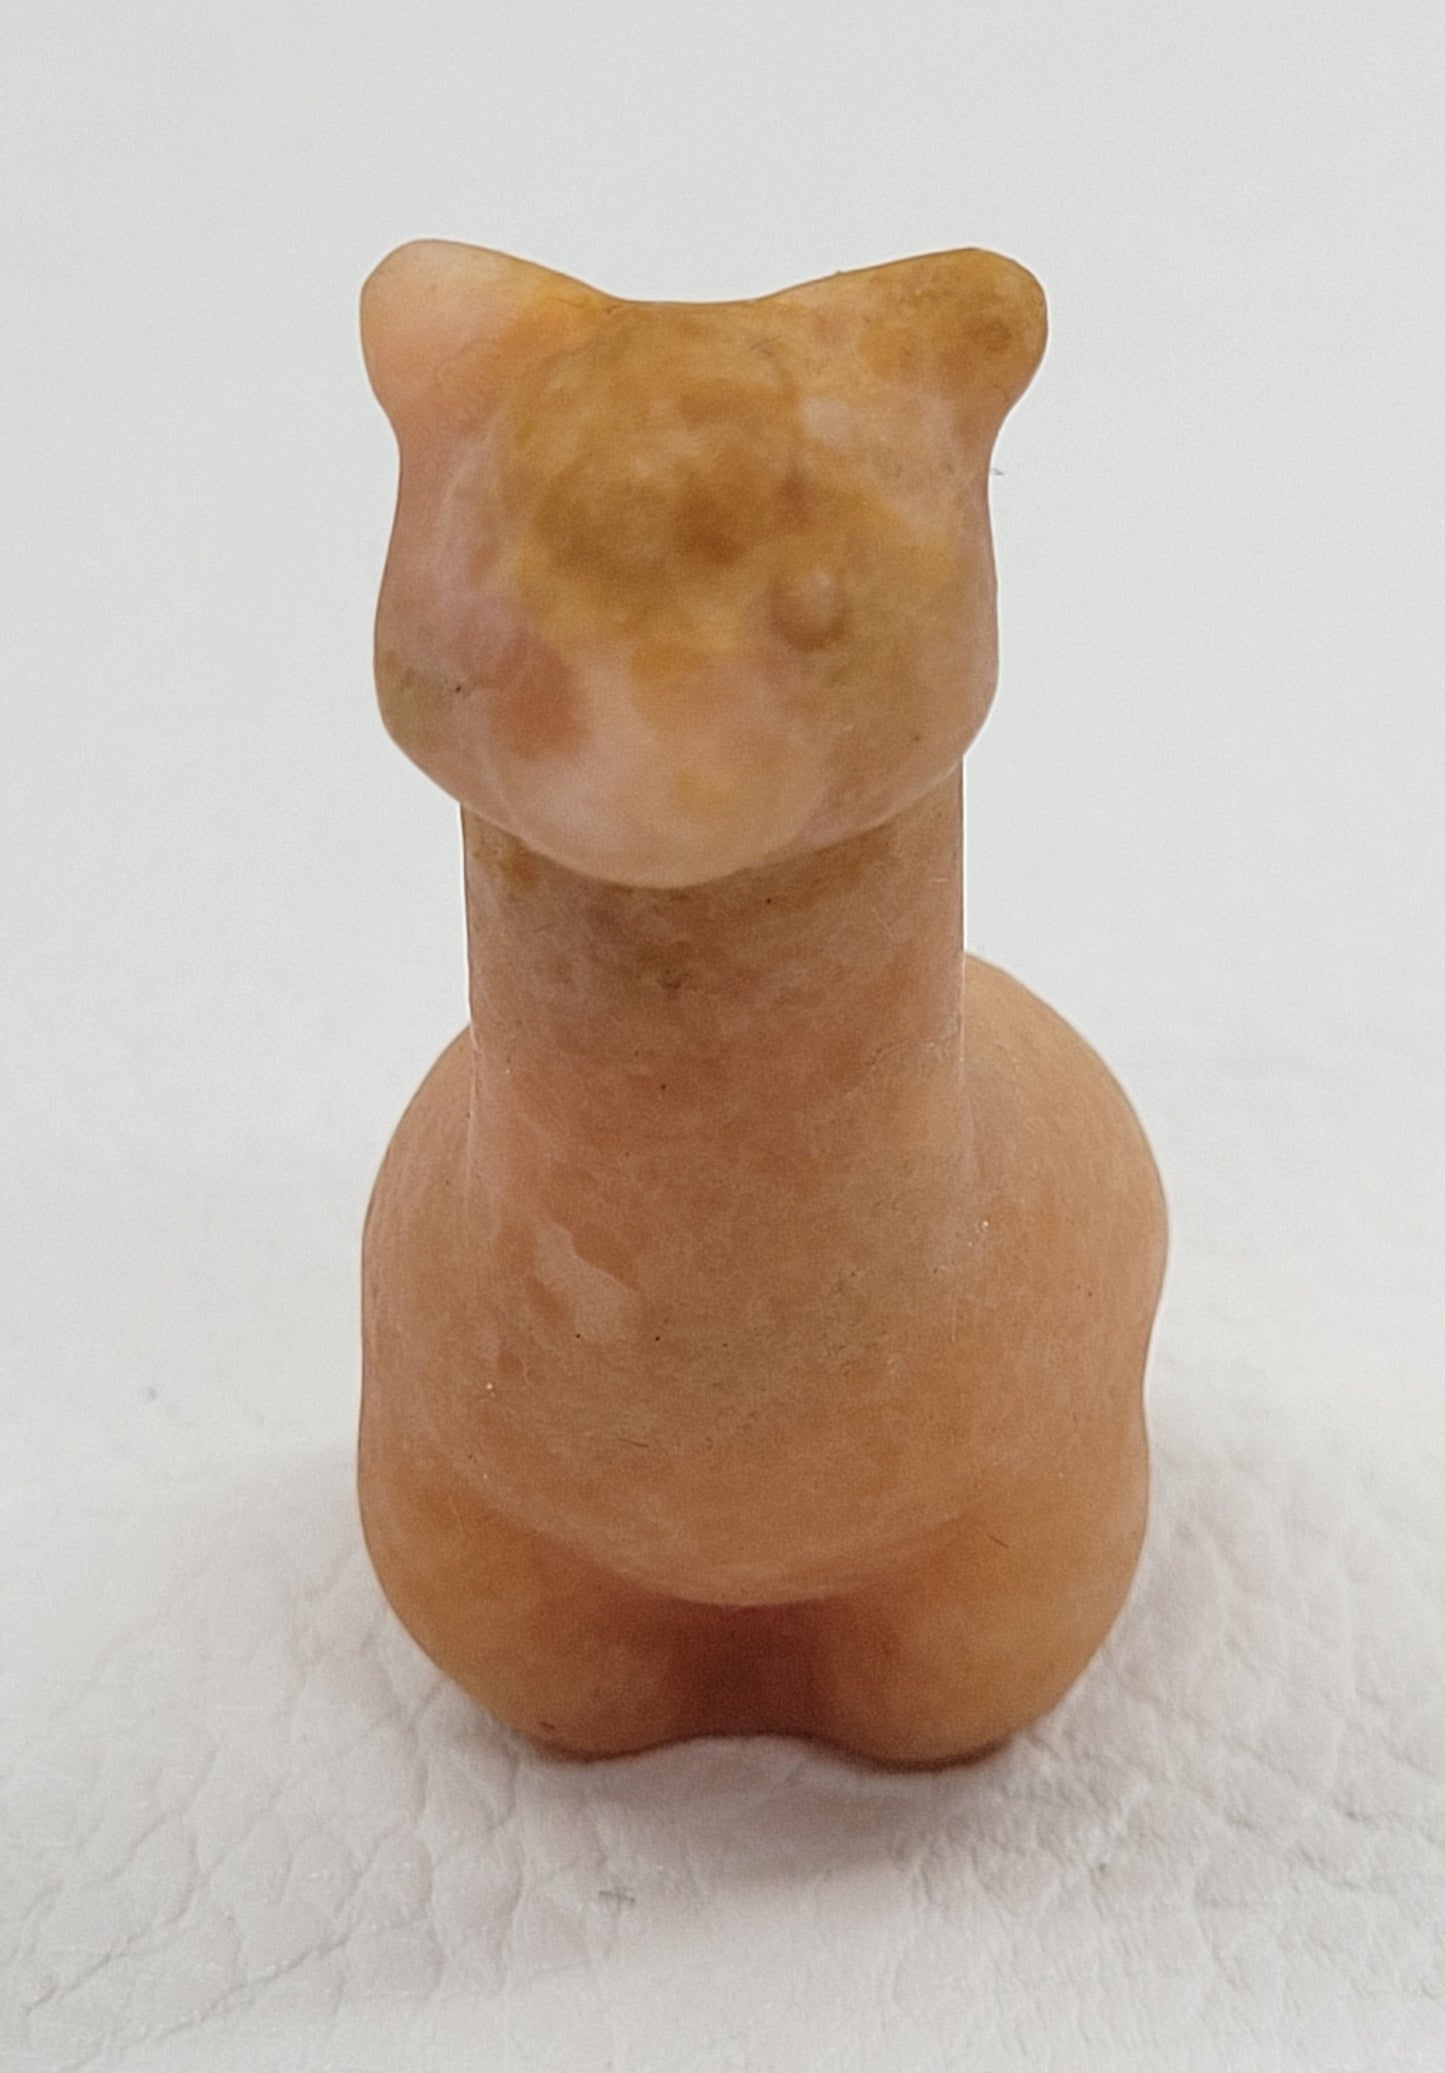 Llama/Alpaca carving